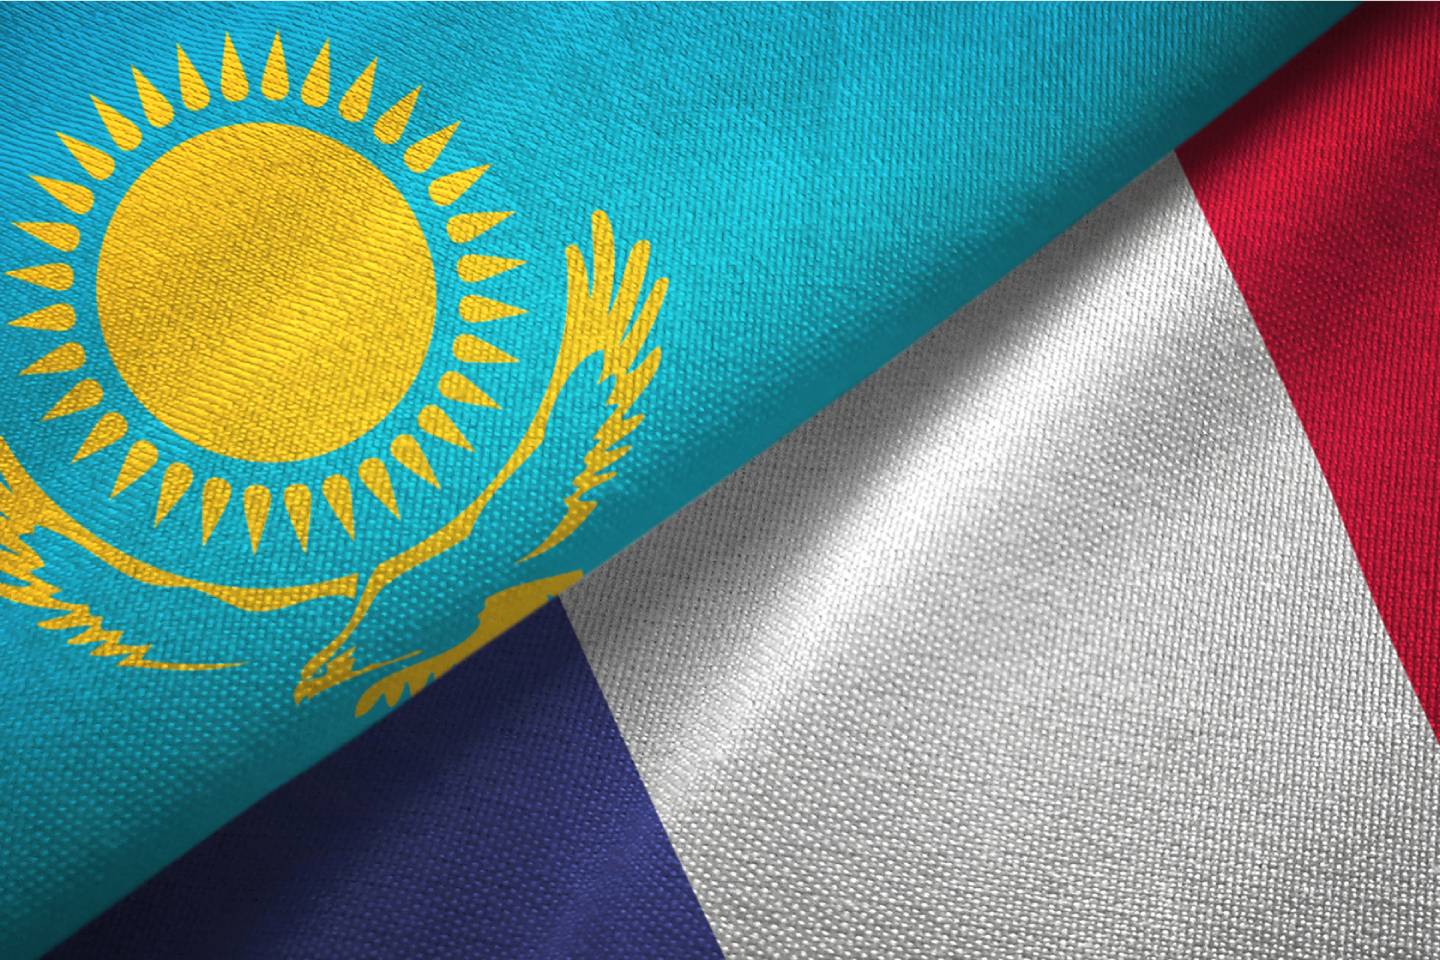 Новости Казахстана / Общество в Казахстане / В Казахстане появится казахско-французский университет